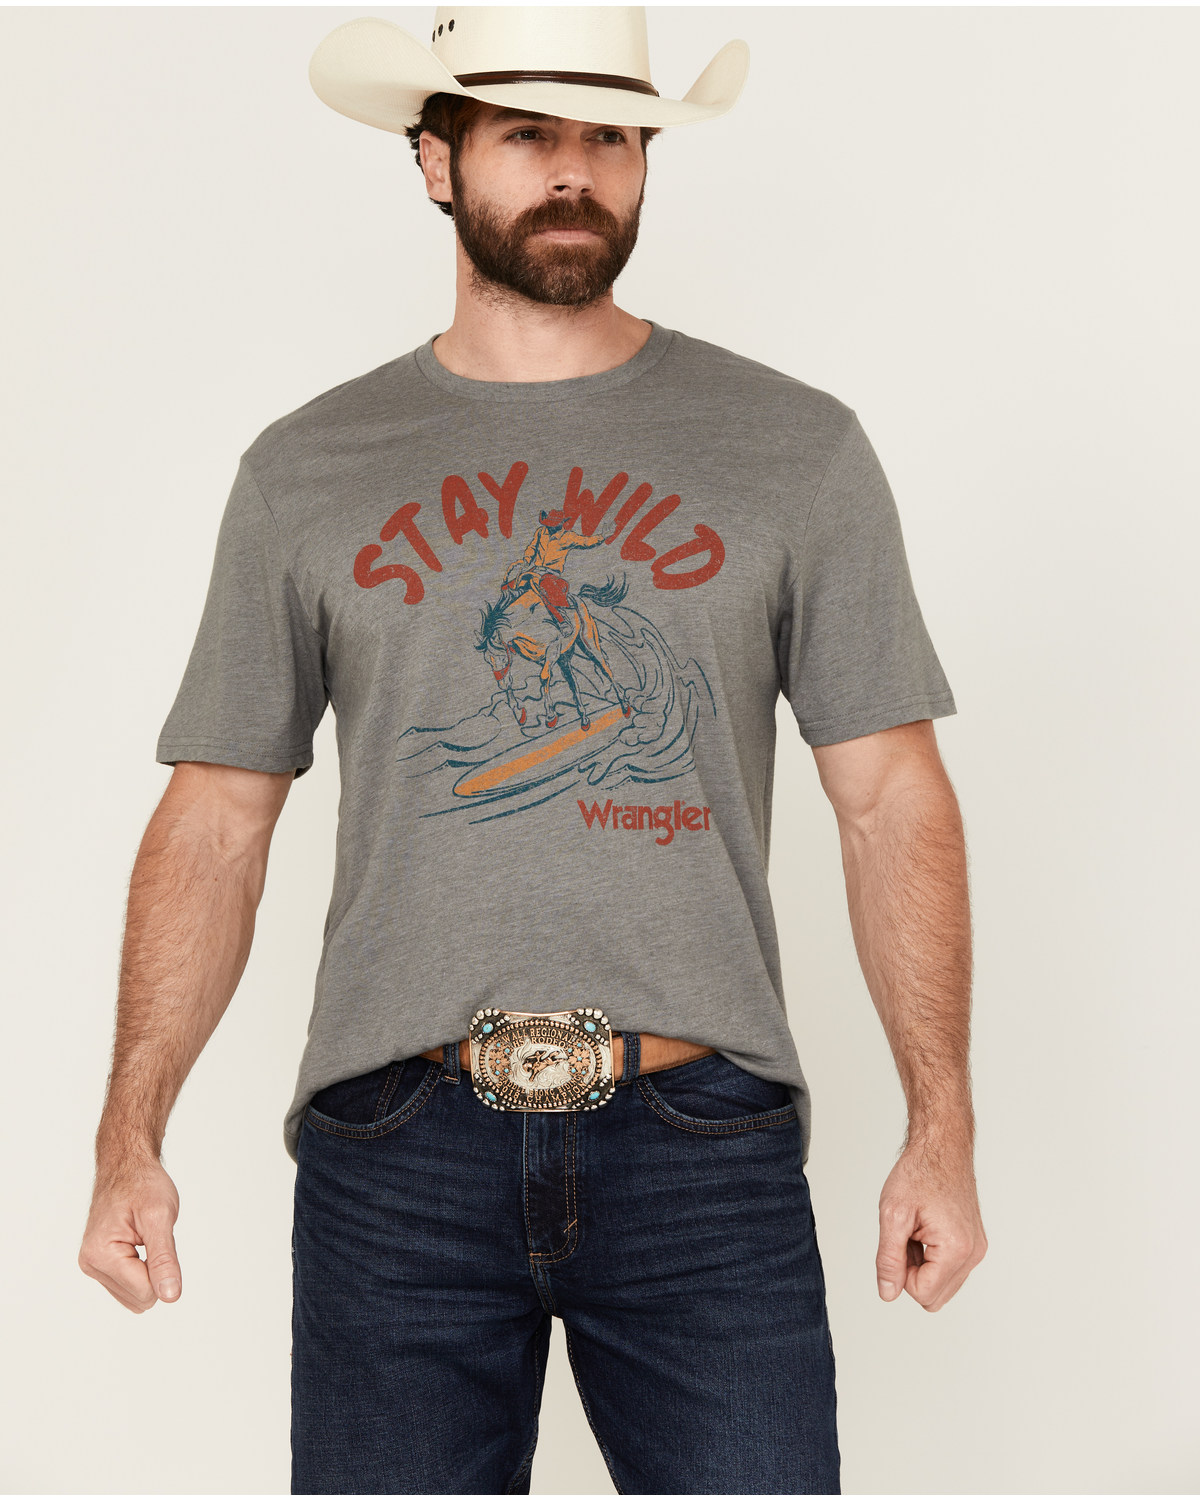 Wrangler Men's Stay Wild Short Sleeve Graphic T-Shirt